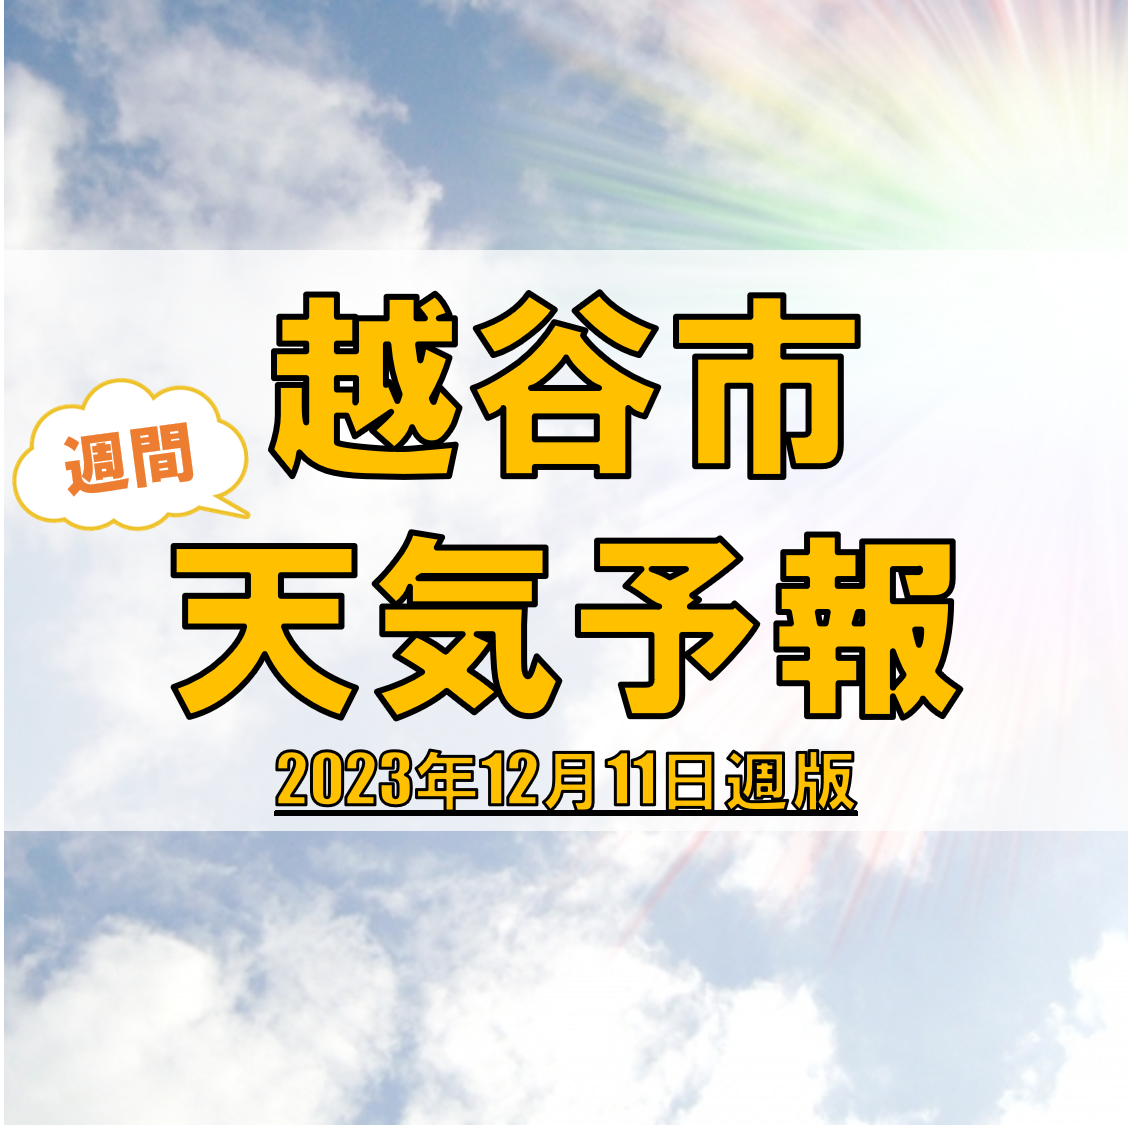 越谷市の天気 週間予報【2023年12月11日週】